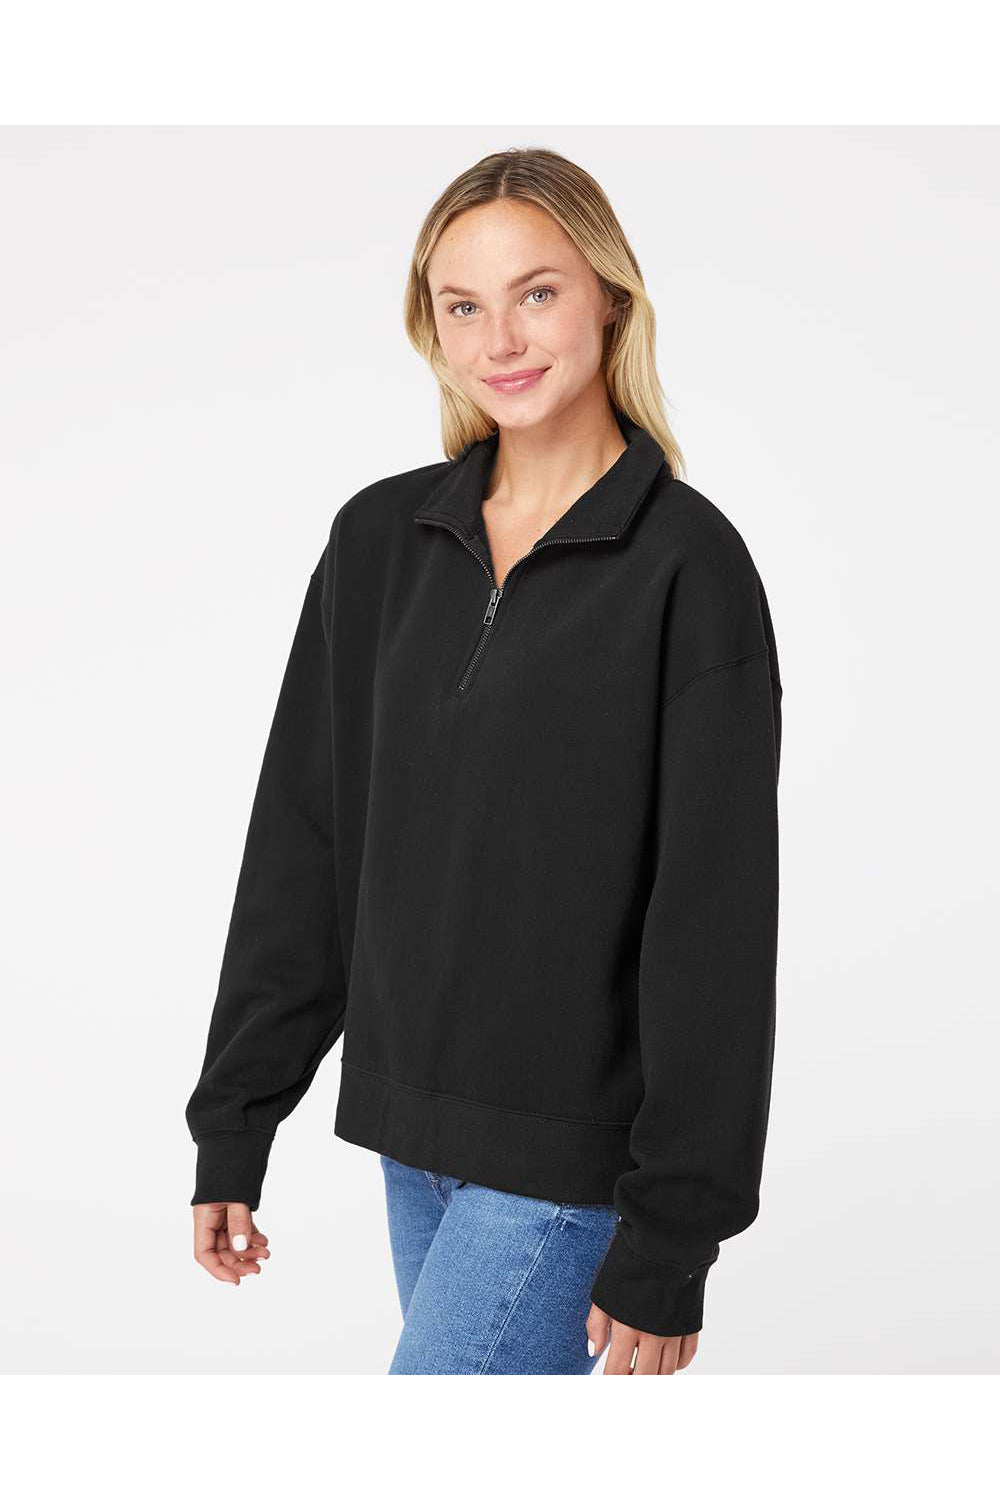 MV Sport W22713 Womens Sueded Fleece 1/4 Zip Sweatshirt Black Model Side